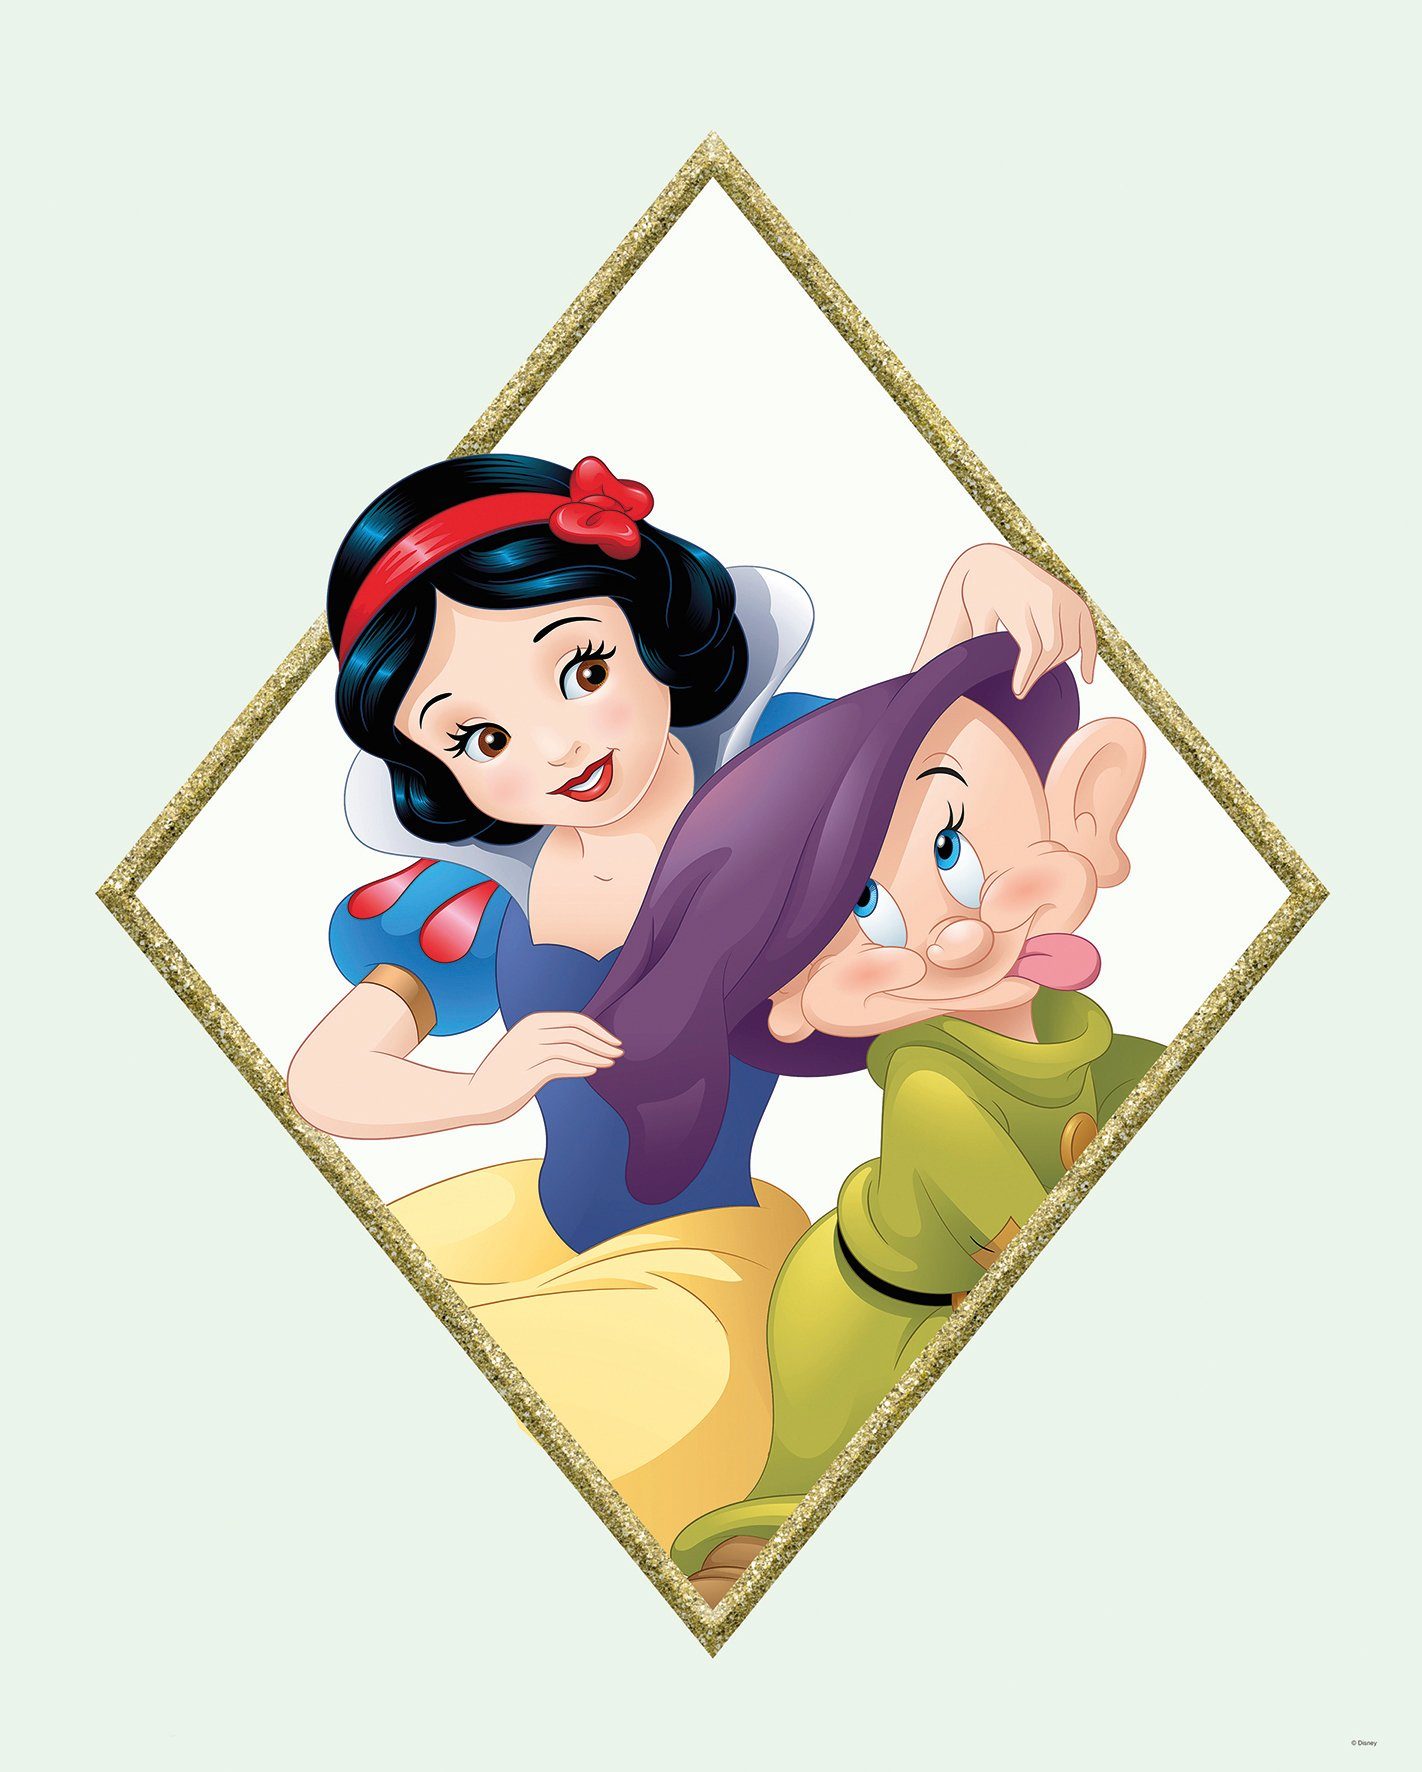 Komar Poster Snow white & Dopey